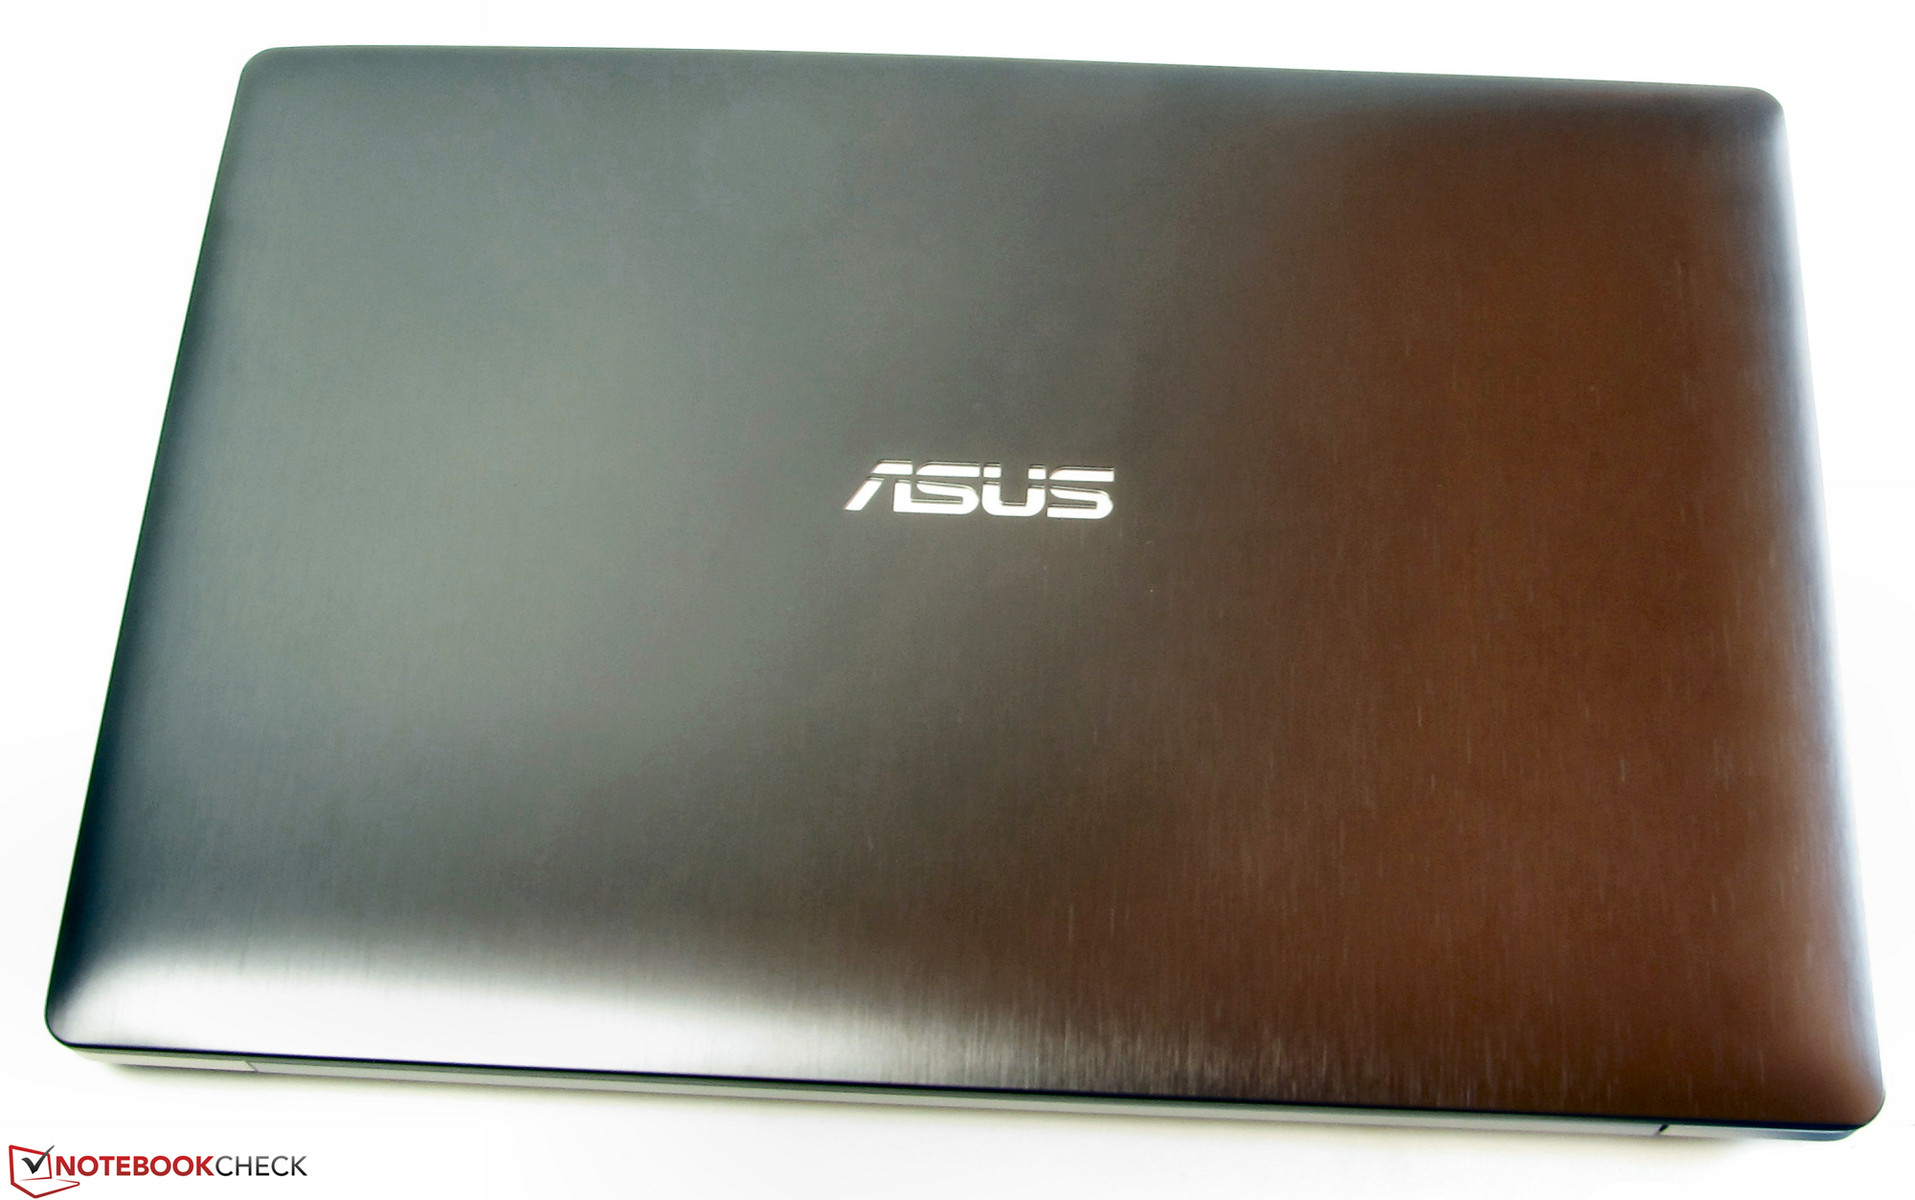 Ноутбук Asus N550jv Купить